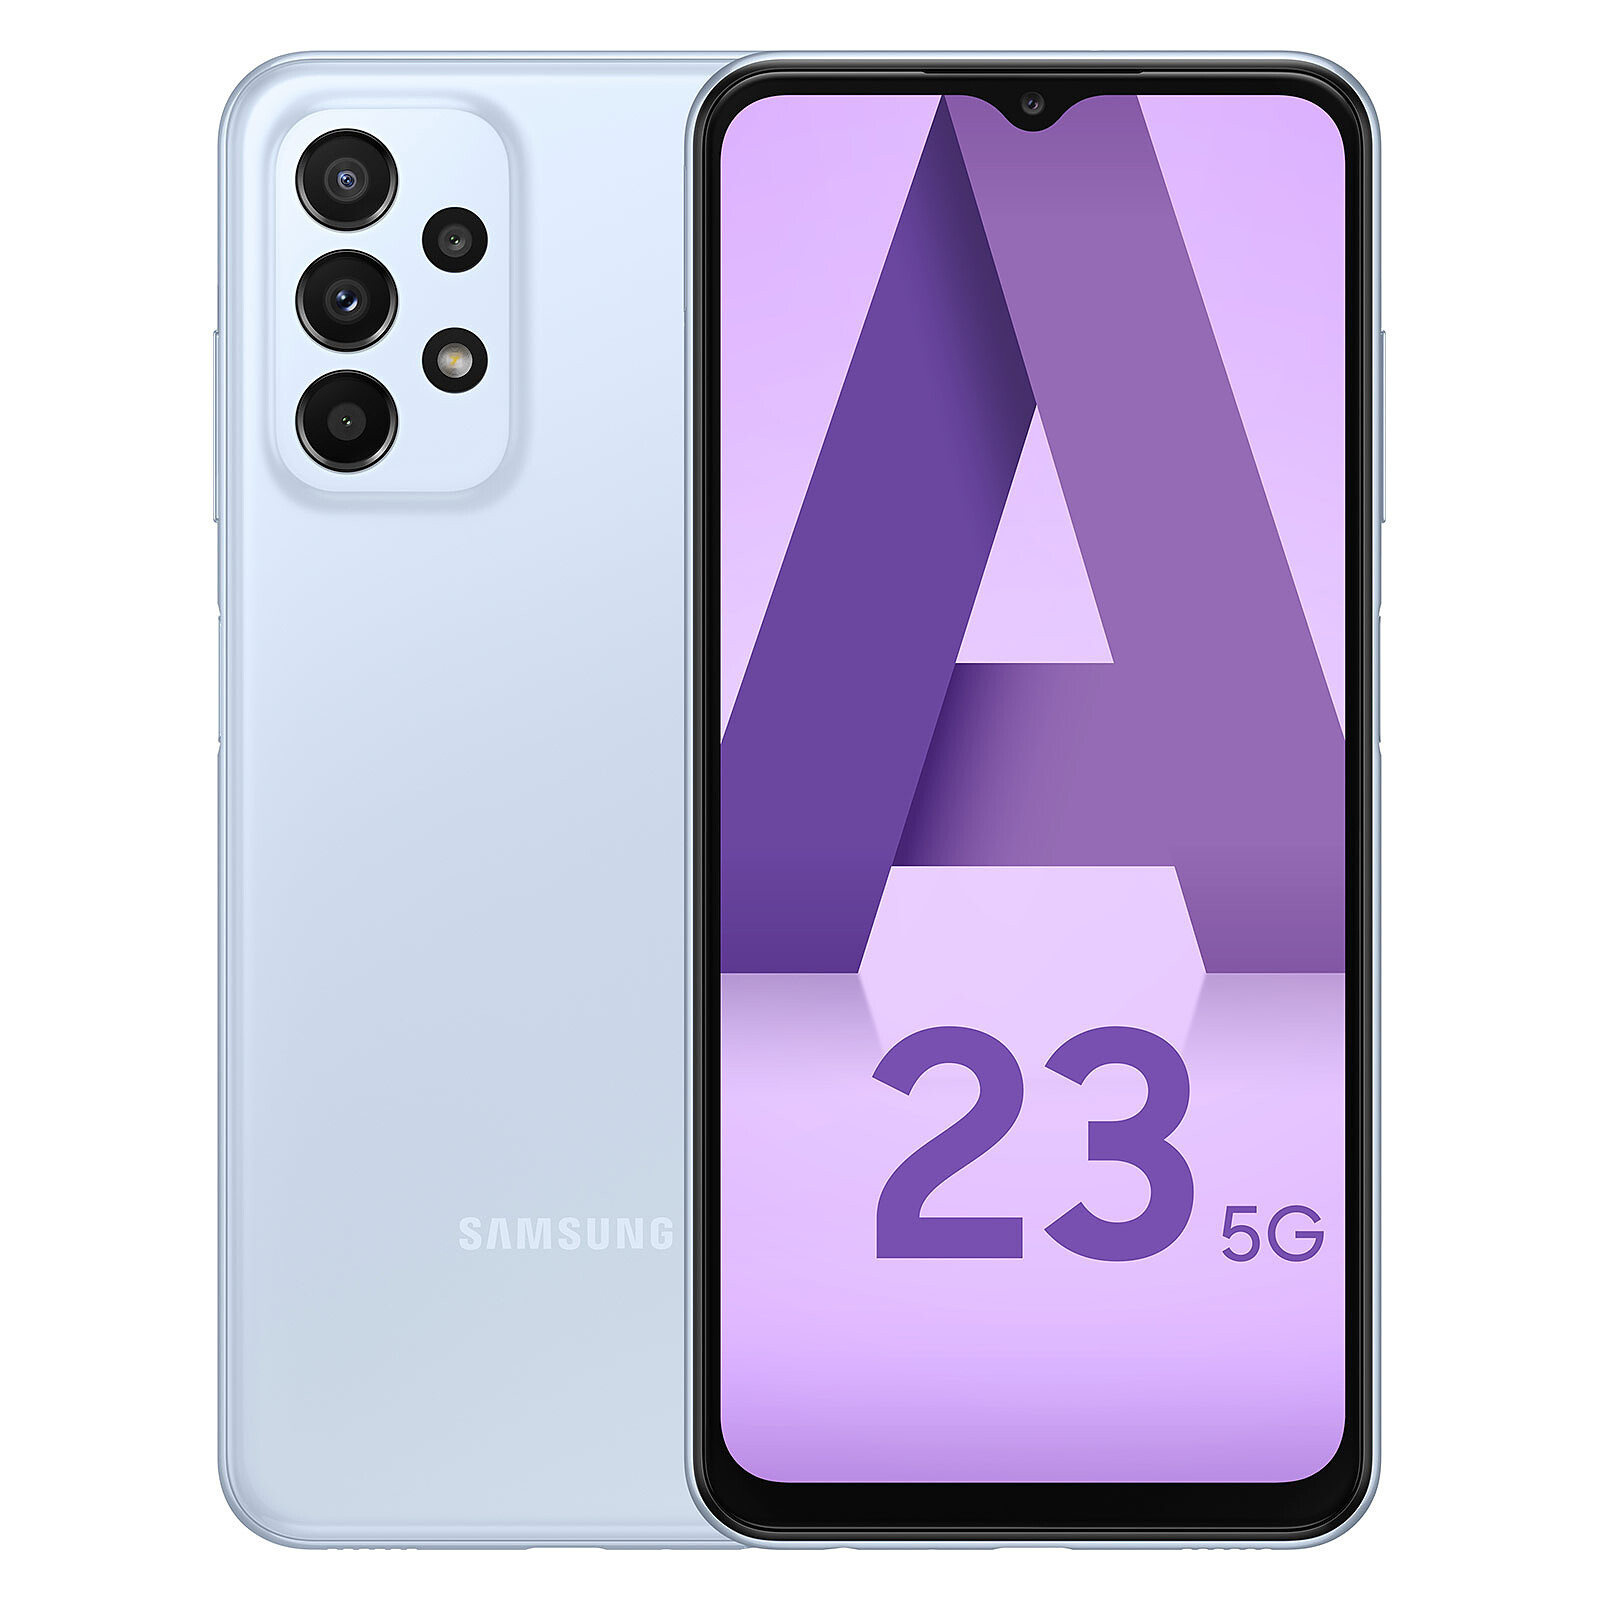 Samsung Galaxy A23 5G - Ficha, valoración y precios en España